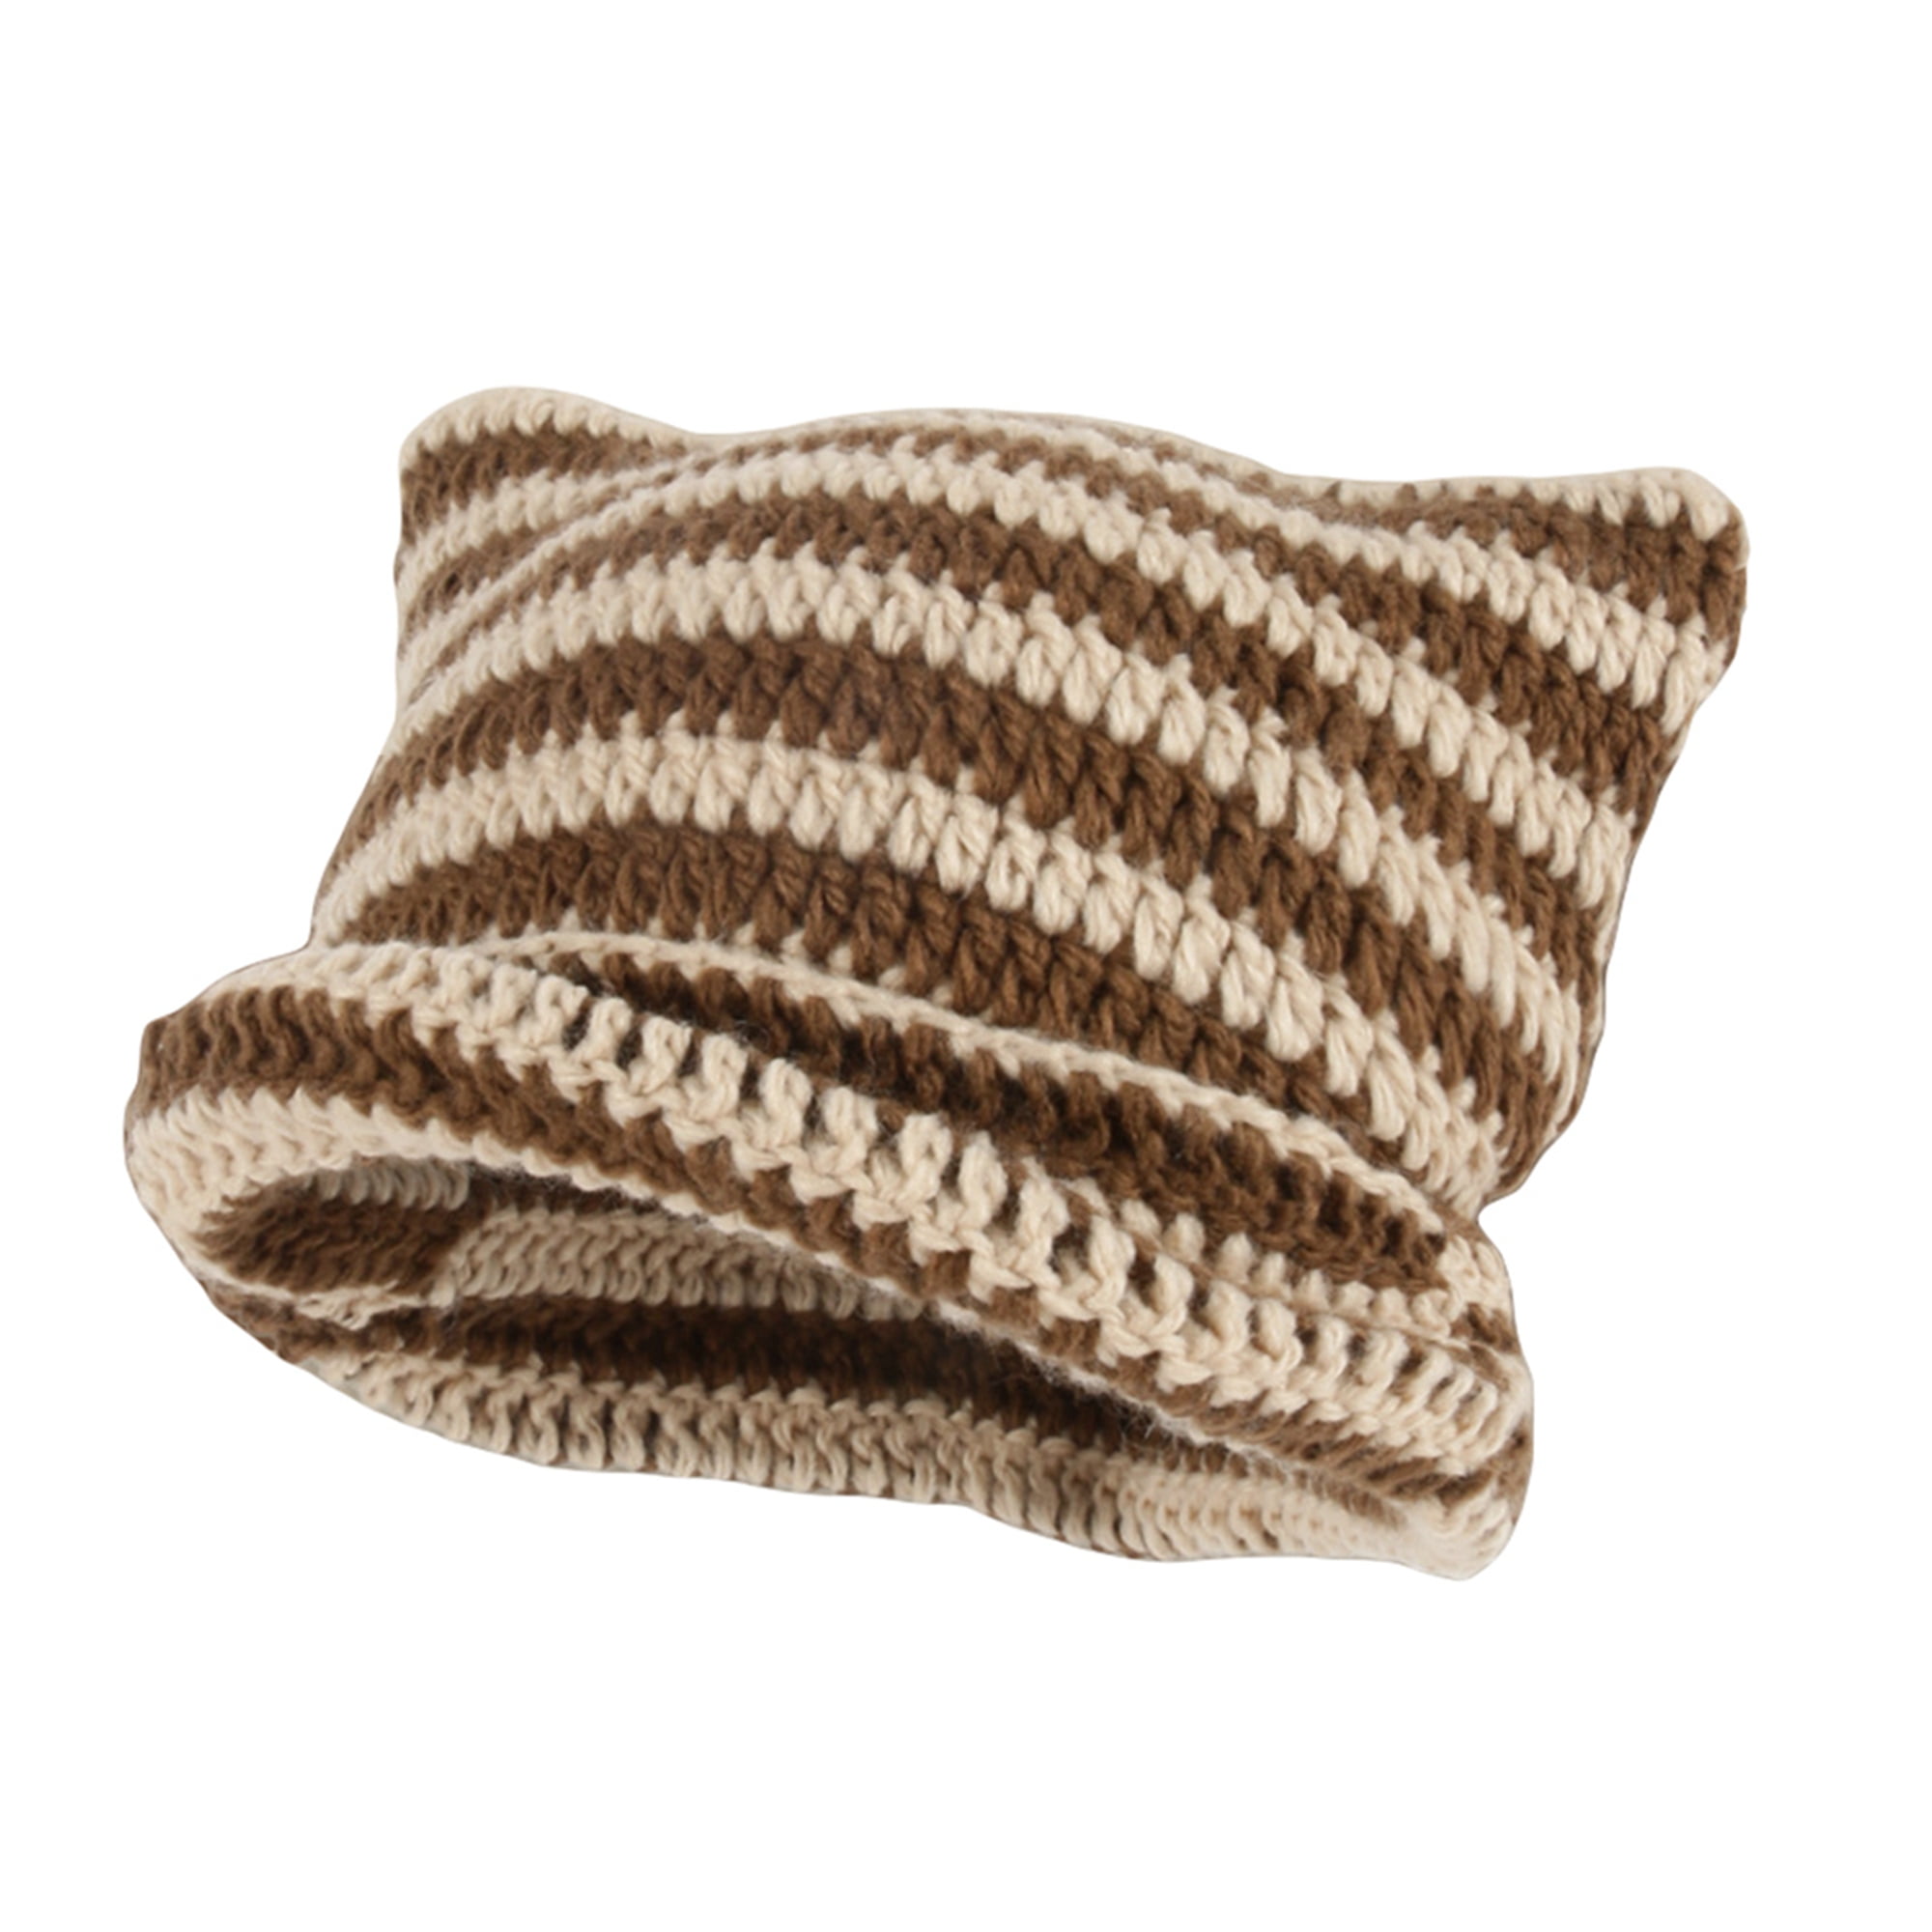 Sunisery Women Winter Cat Ears Hats Soft Slouchy Striped Knit Beanie Hat  Trendy Warm Crochet Braided Knit Caps